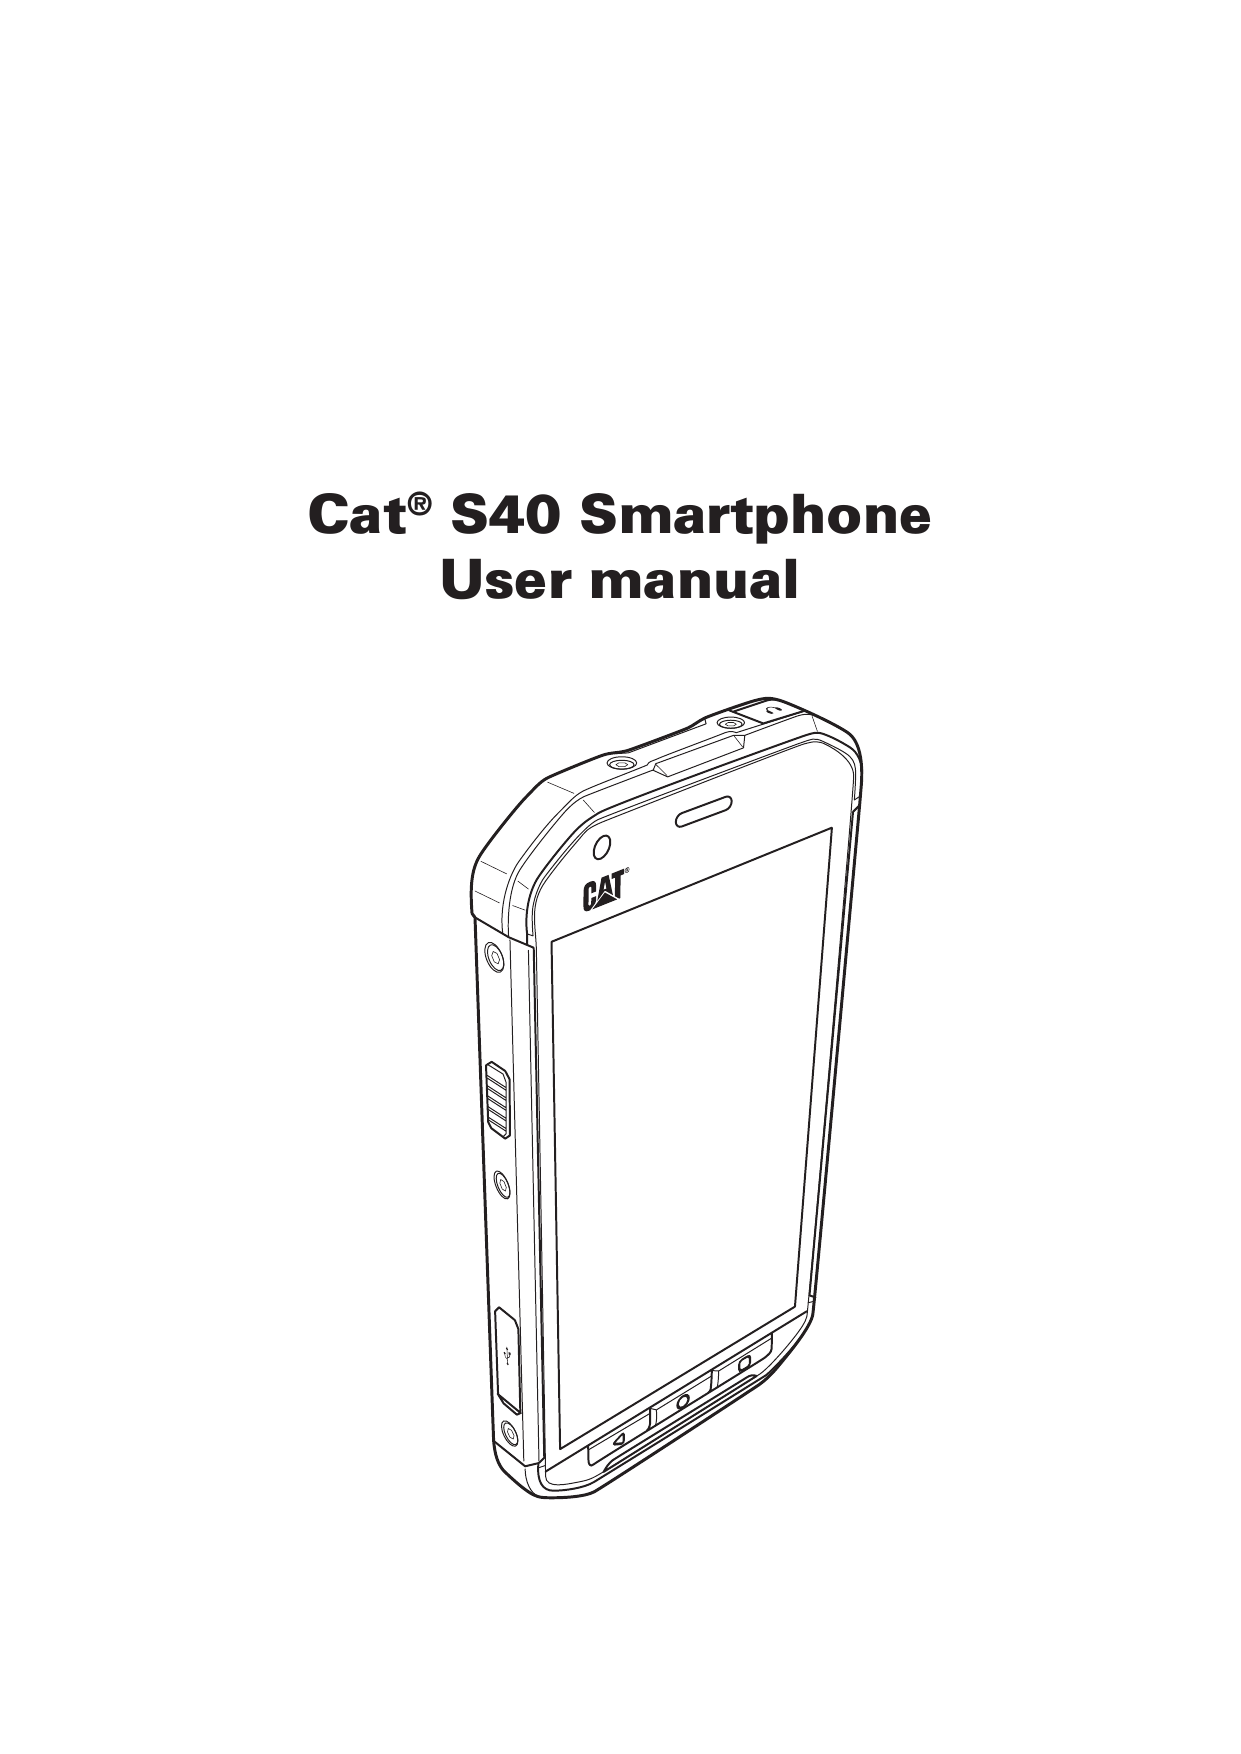 Cat® S40 SmartphoneUser manual